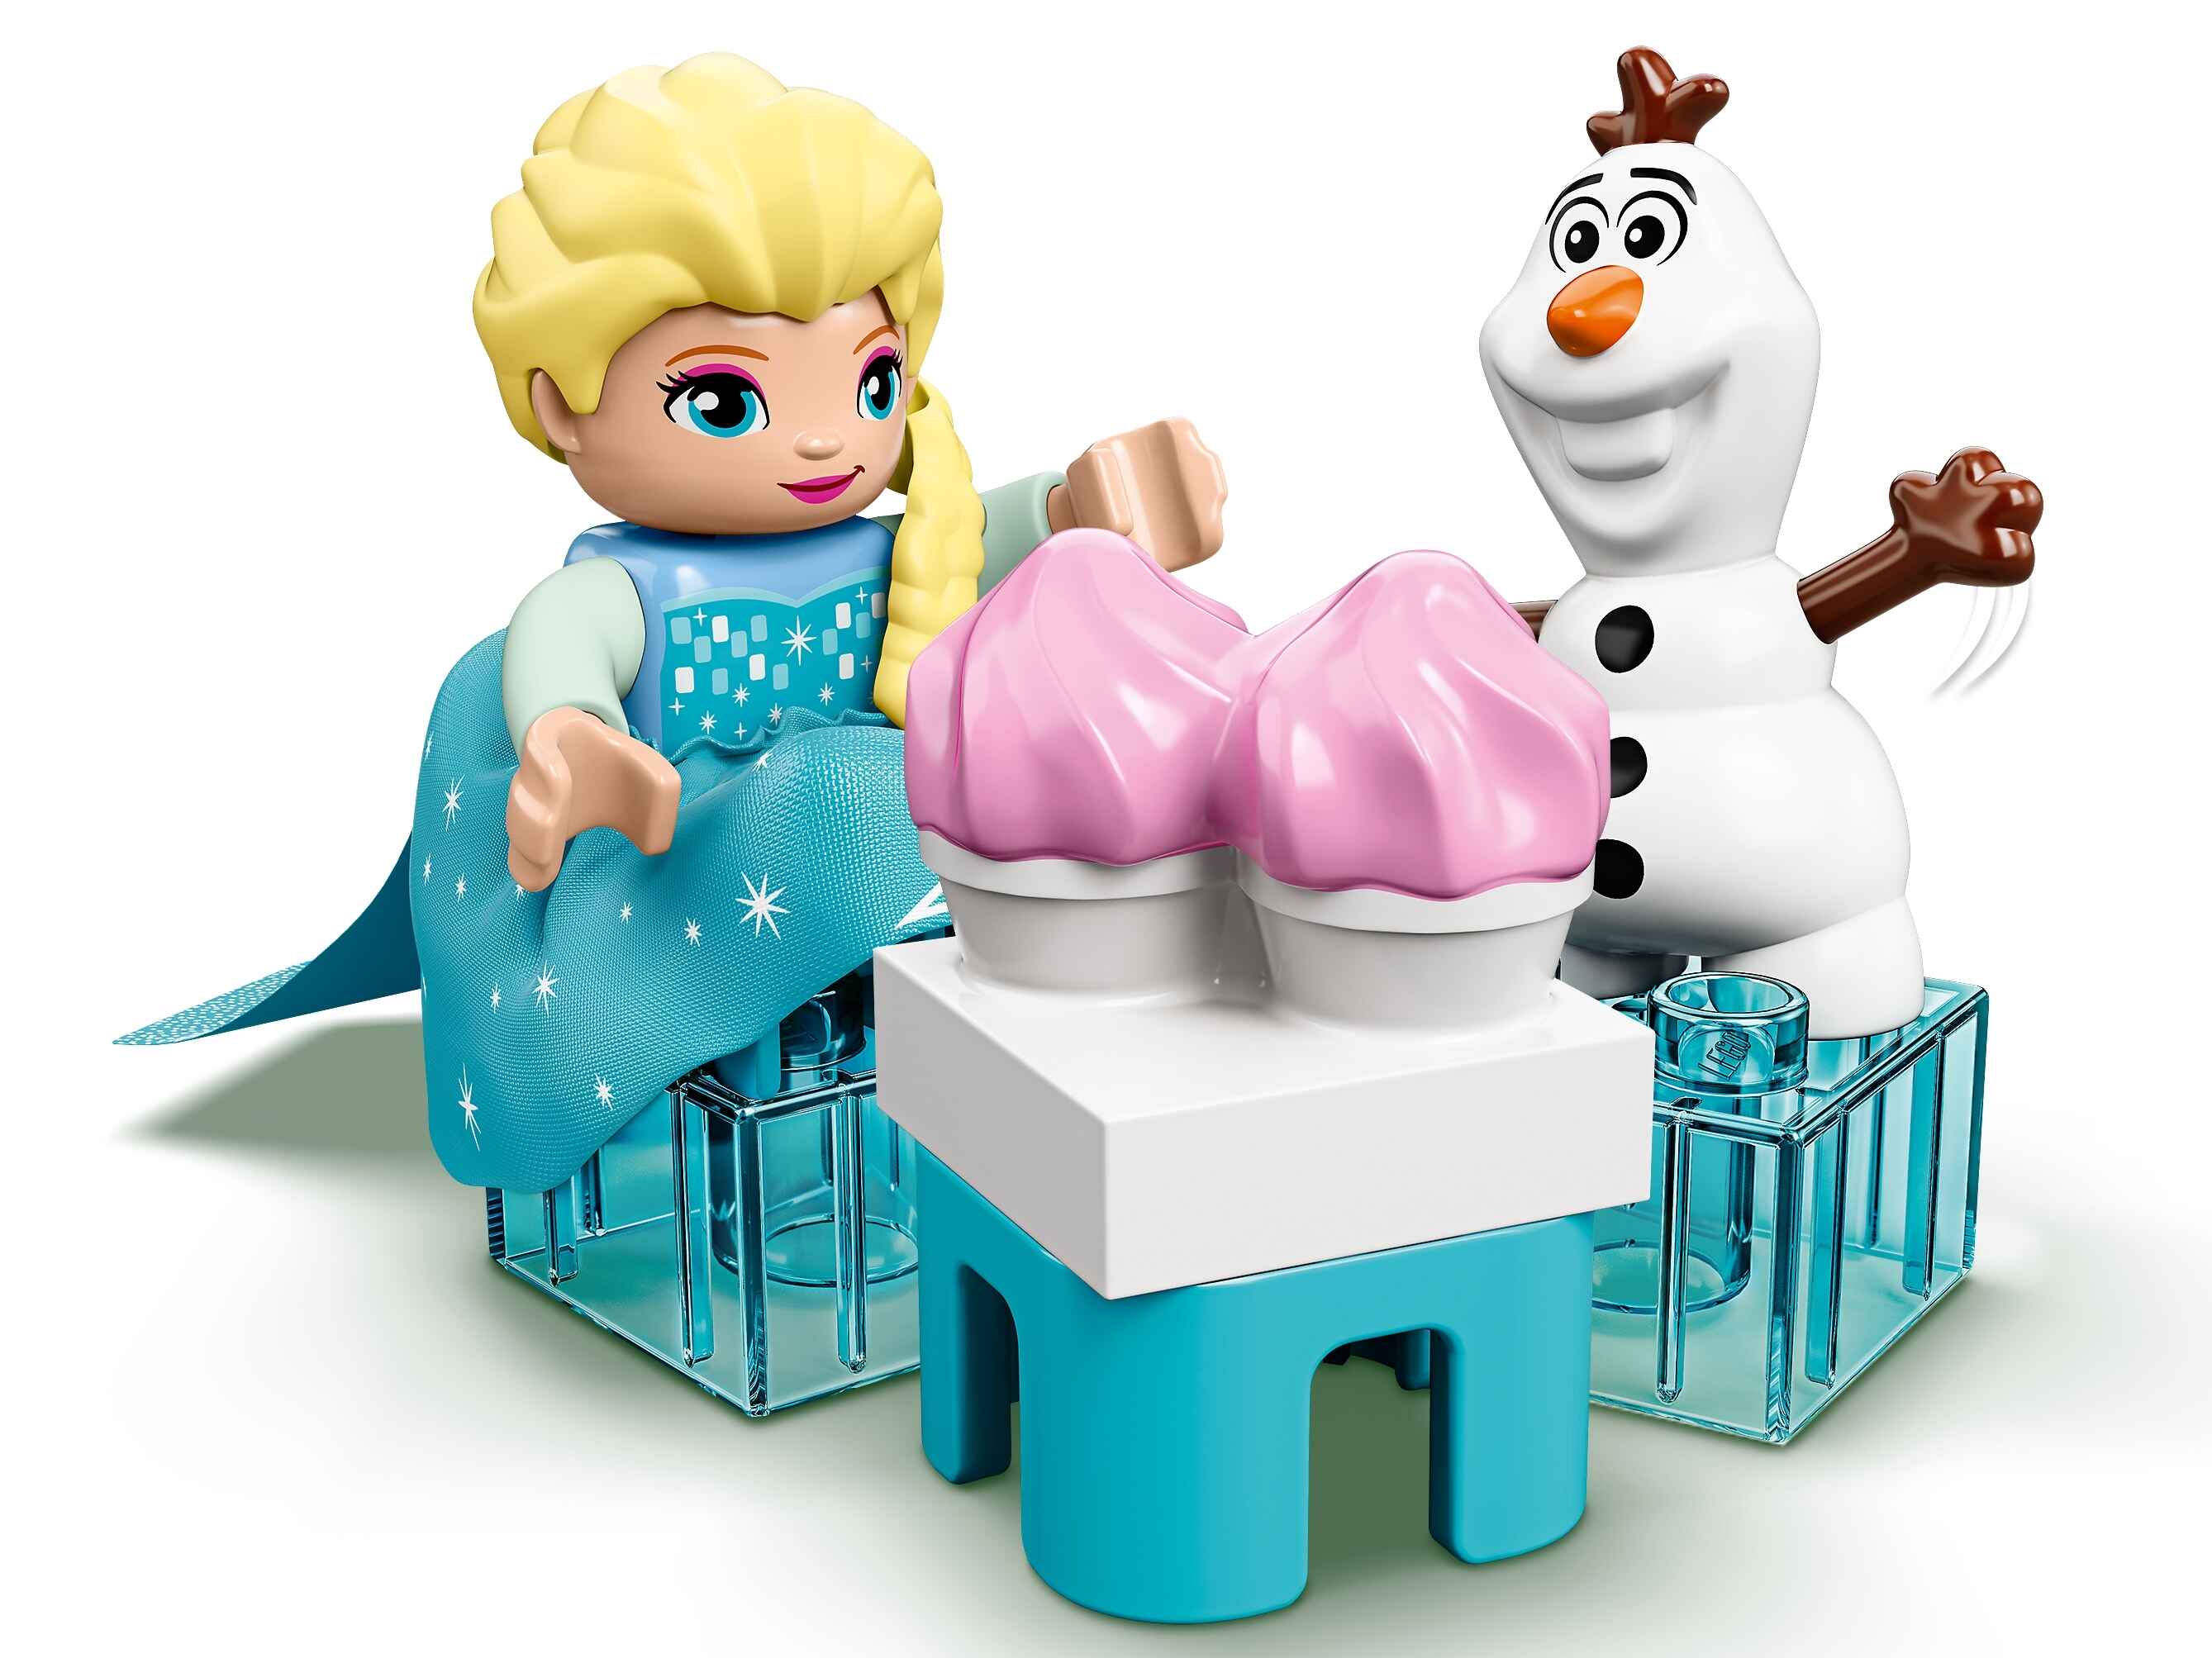 LEGO 10920 DUPLO Princess Frozen II Elsas und Olafs Eis-Café Spielset